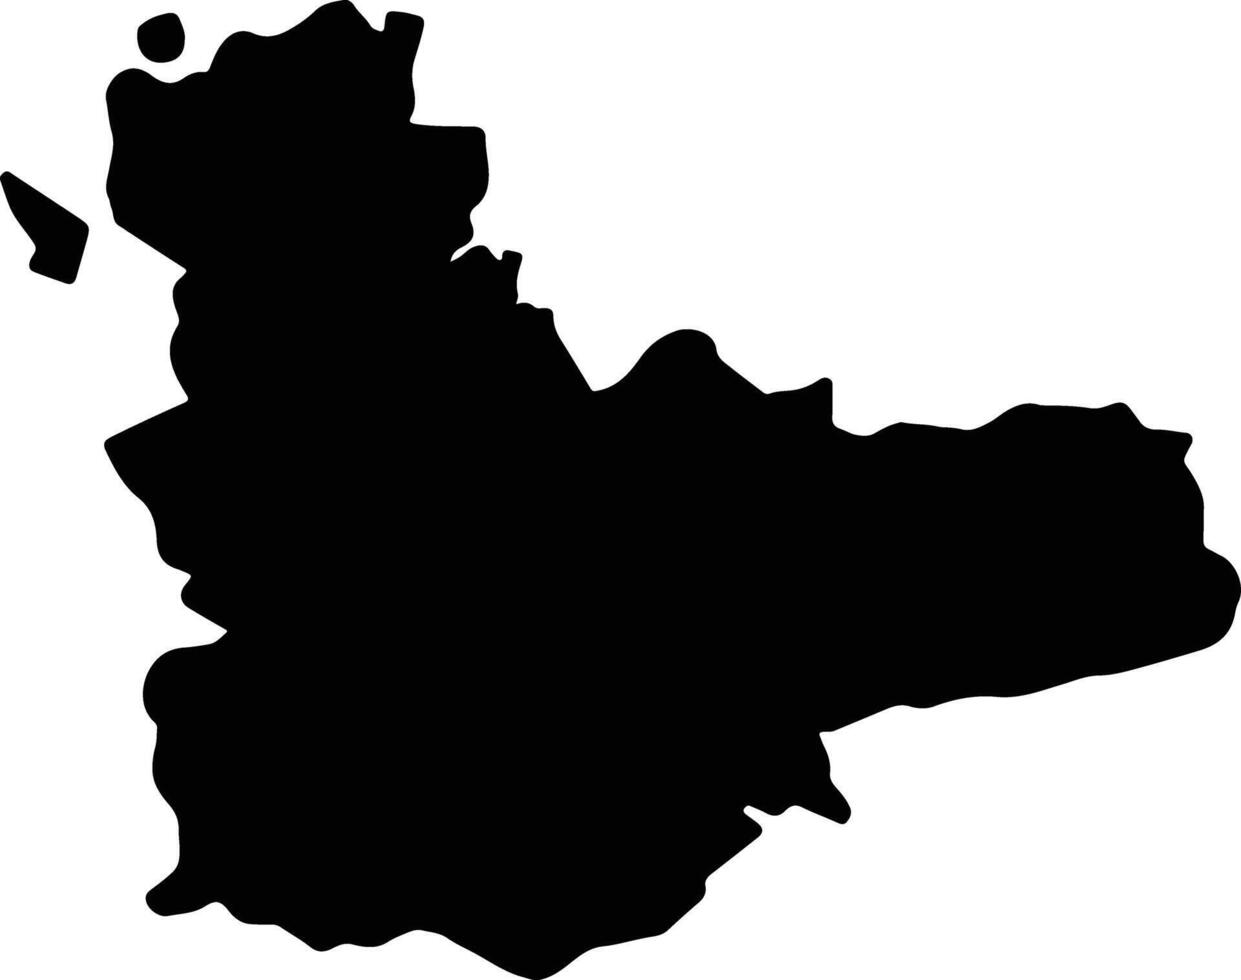 valladolid Spagna silhouette carta geografica vettore